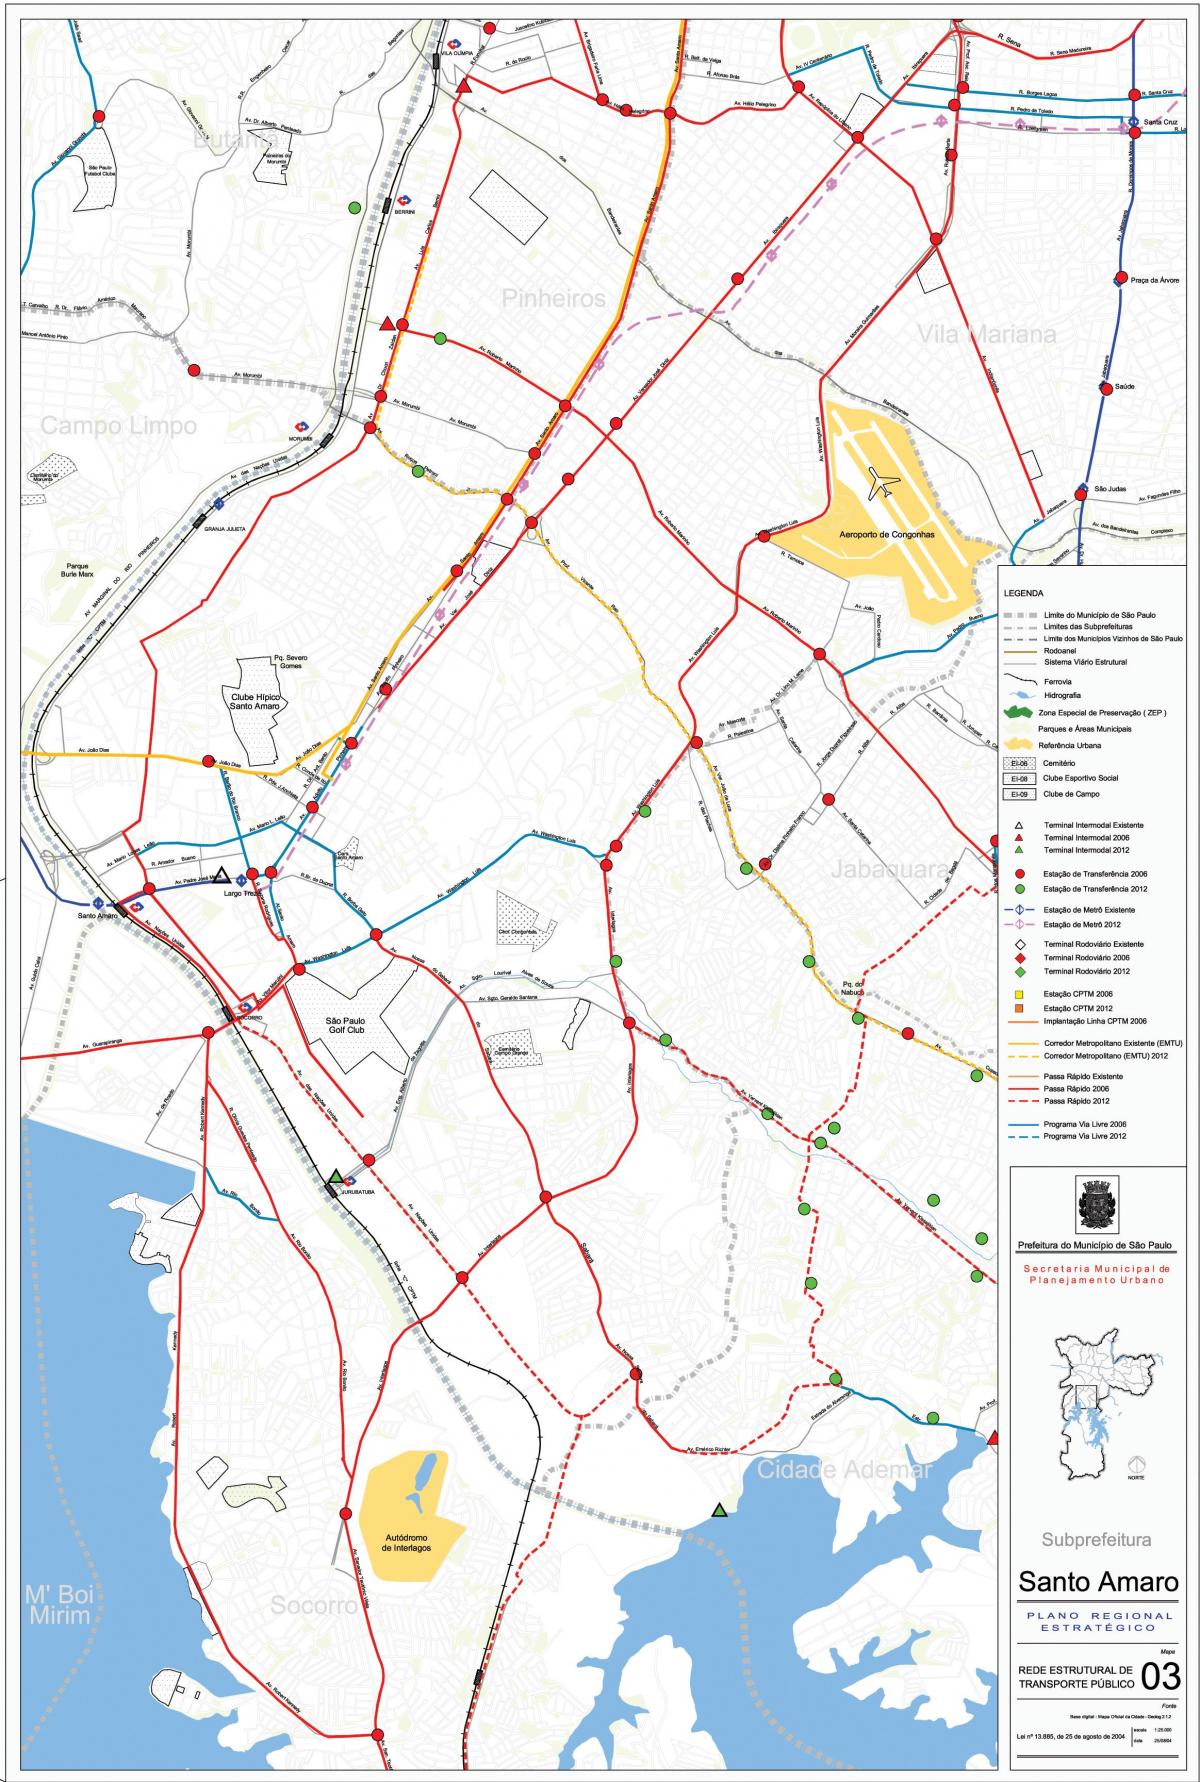 નકશો સંતો અમેરો સાઓ પાઉલો - જાહેર પરિવહન